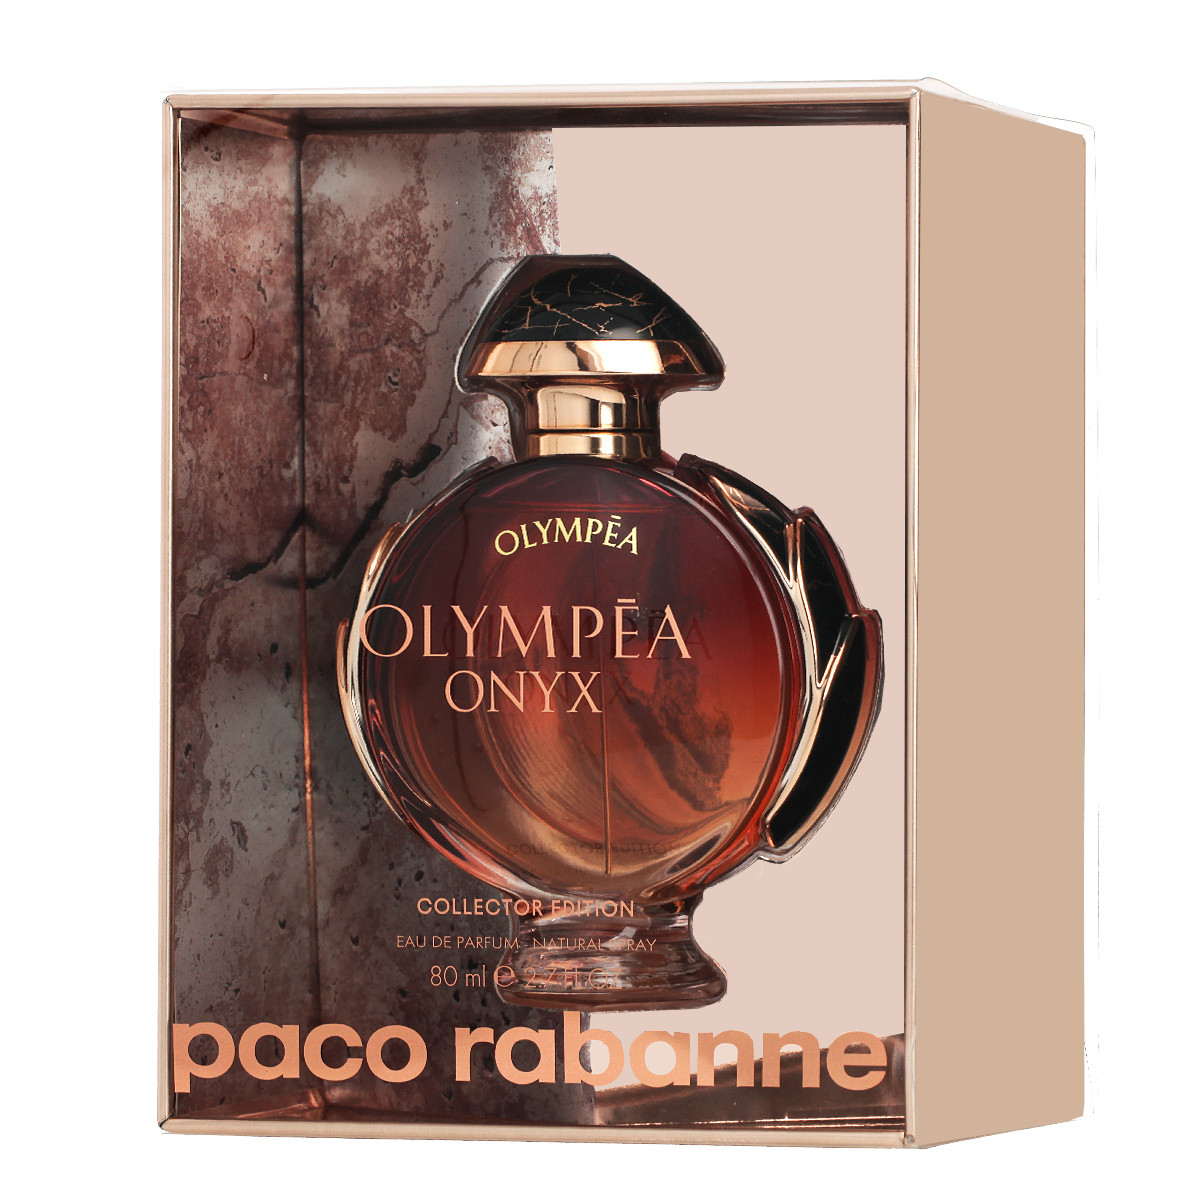 Paco Rabanne Olympea Onyx Collector Edition - EDP 80 ml + 2 mesiace na vrátenie tovaru